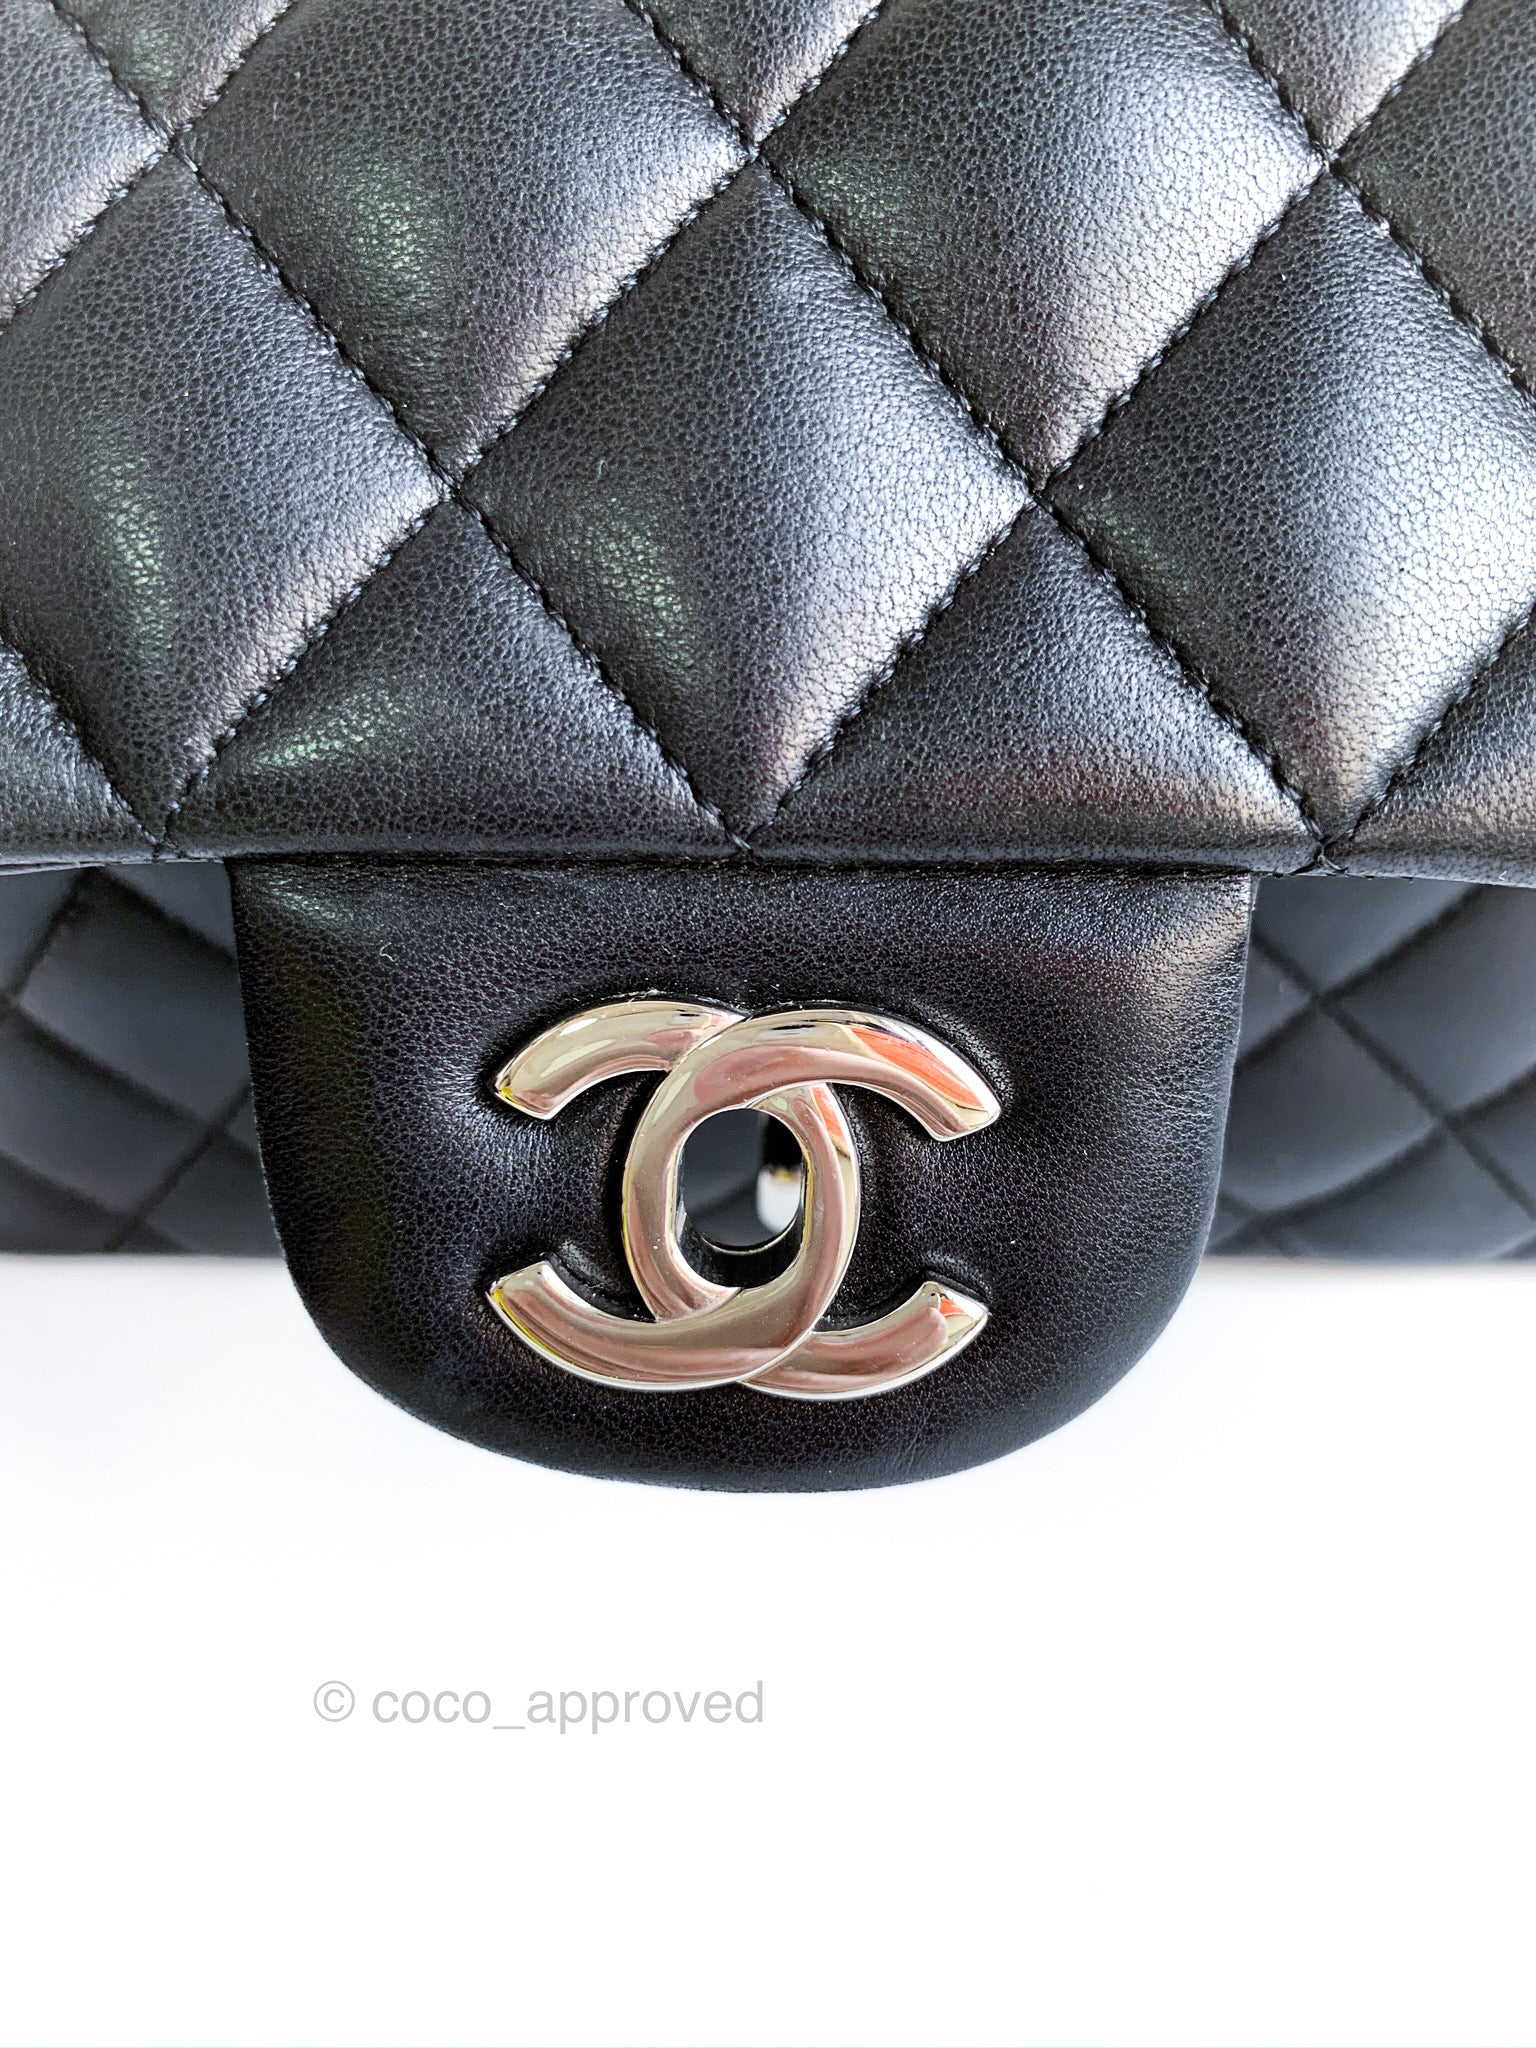 Chanel Mini Square Black Lambskin Gold Hardware – Coco Approved Studio